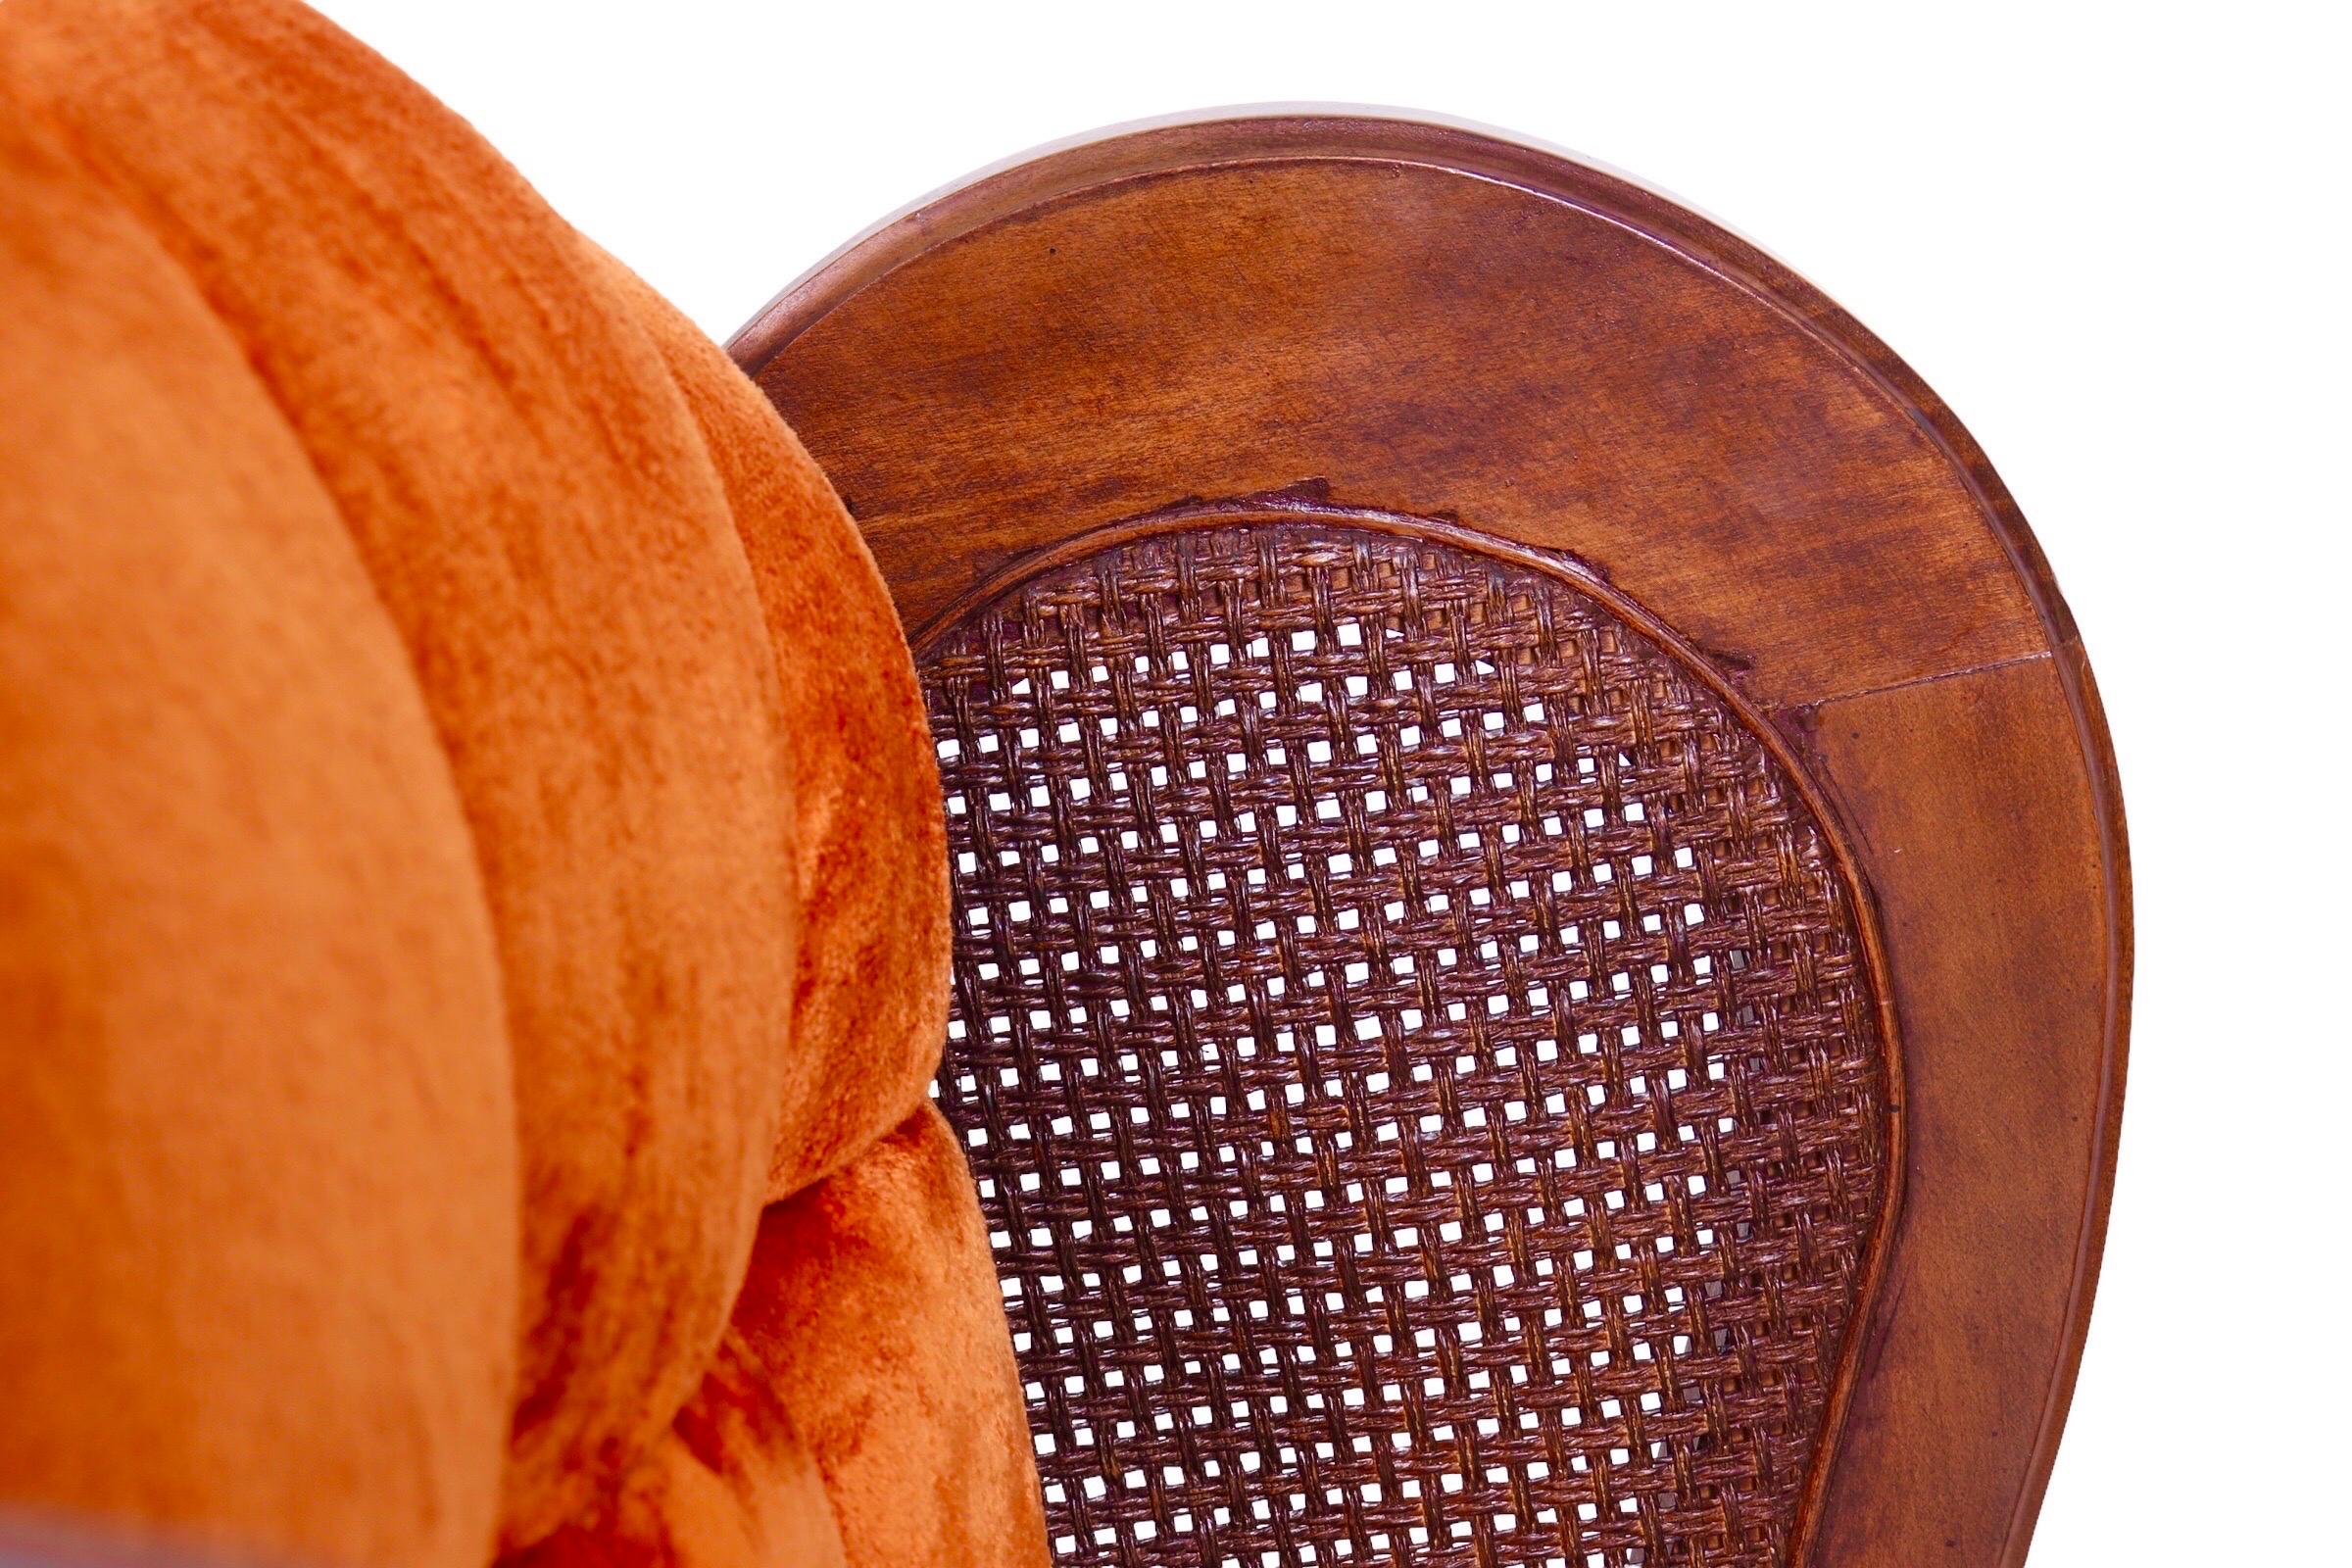 Une paire de fauteuils à oreilles cannelés des années 1960 par Lewittes Furniture Company de Caroline du Nord. L'assise et le dossier sont recouverts du velours orange d'origine, avec des boutons carrés à l'avant et sur l'assise arrondie. Le cadre